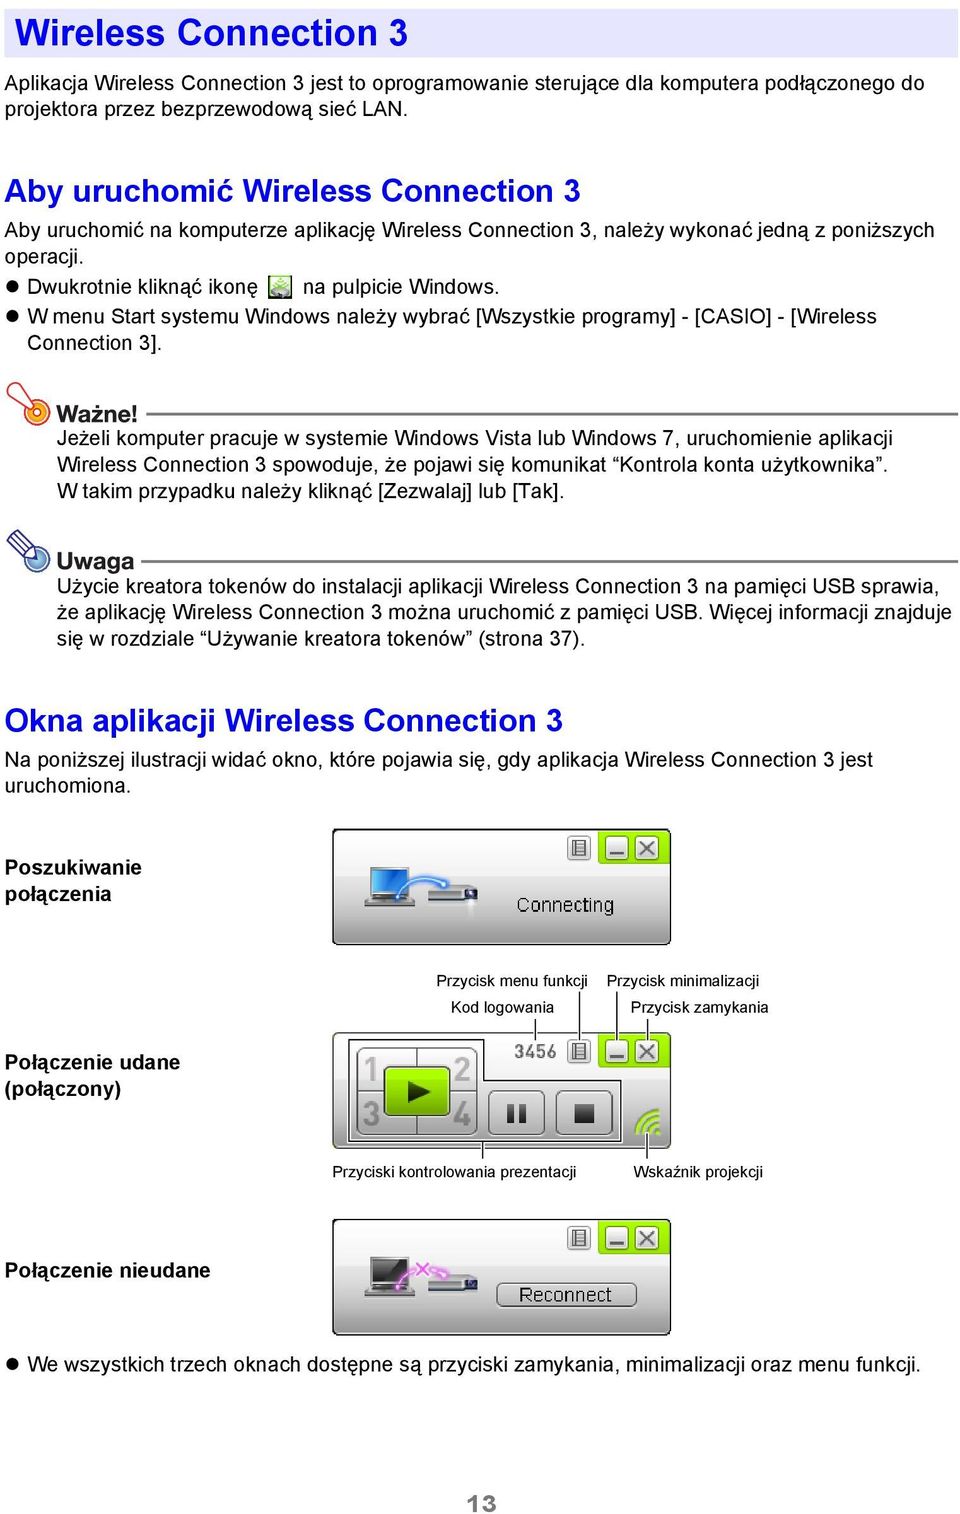 W menu Start systemu Windows należy wybrać [Wszystkie programy] - [CASIO] - [Wireless Connection 3].